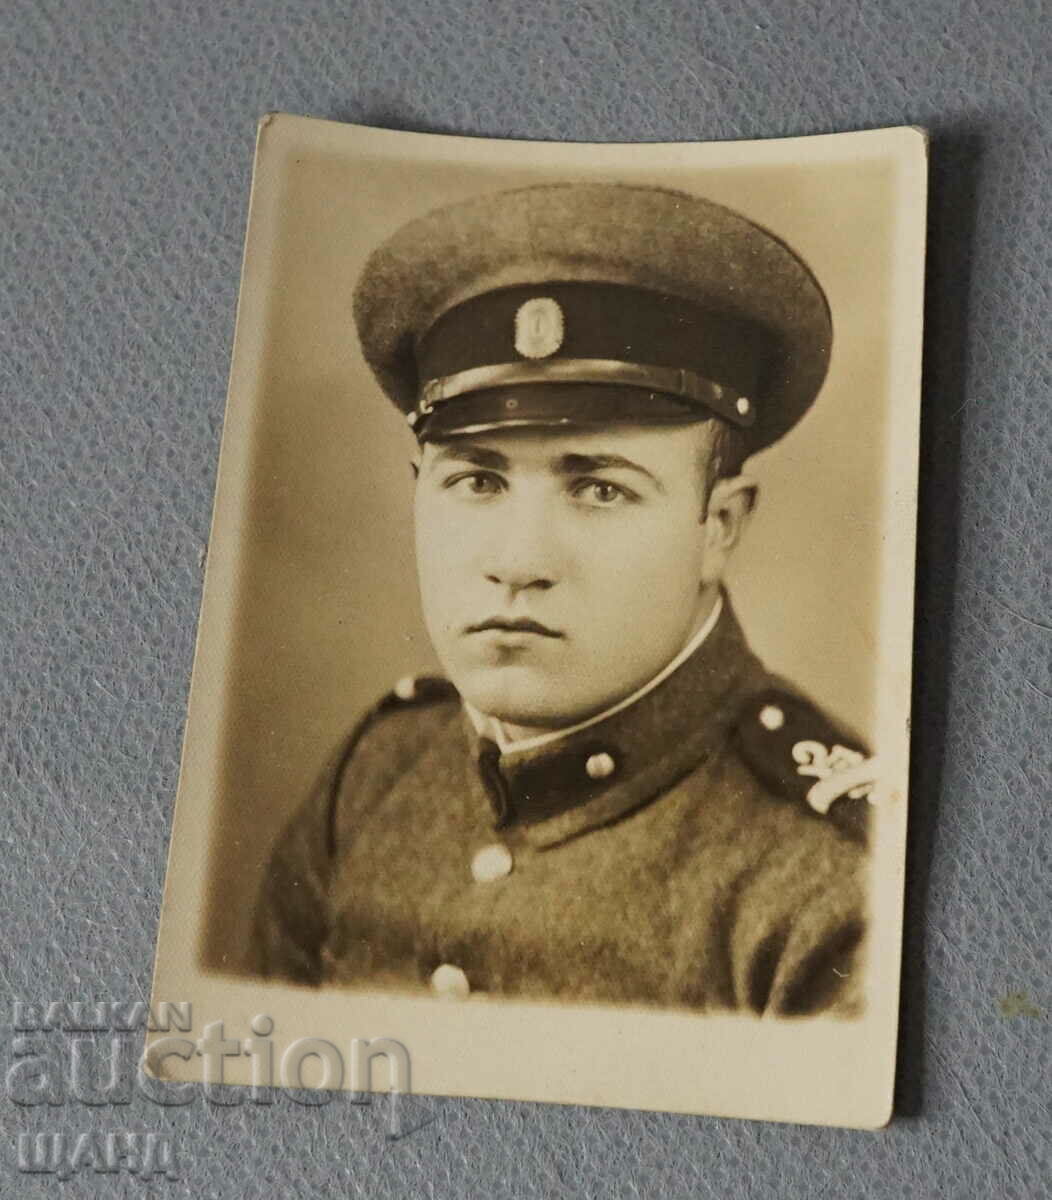 1934 Παλαιά στρατιωτική φωτογραφία αξιωματικού φωτογραφίας CAIRO Maistorov